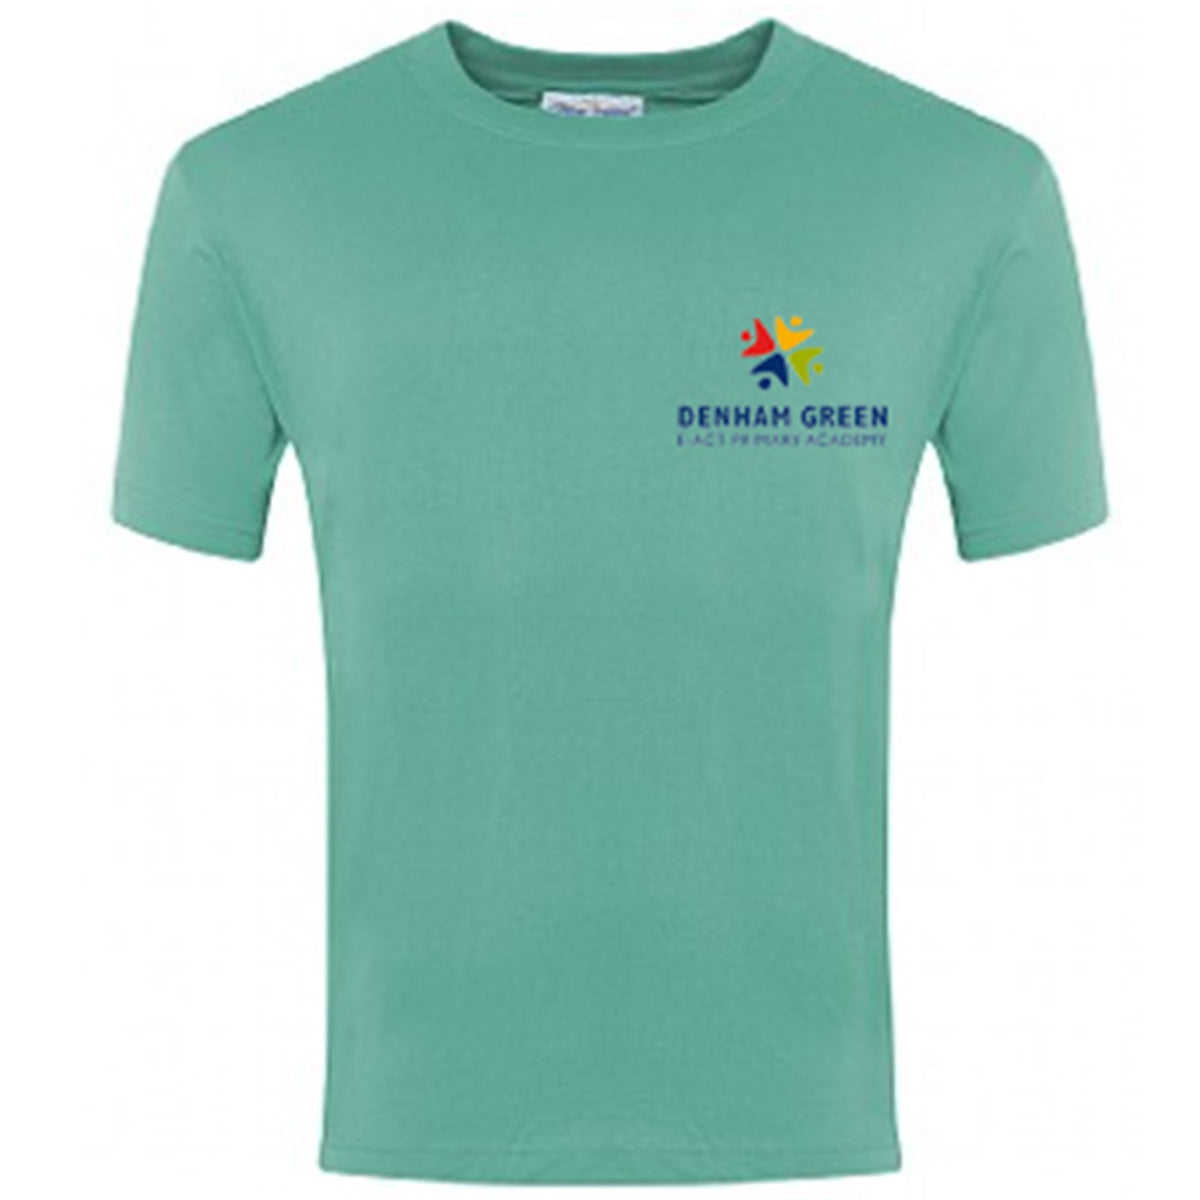 Denham Green School T Shirt SO